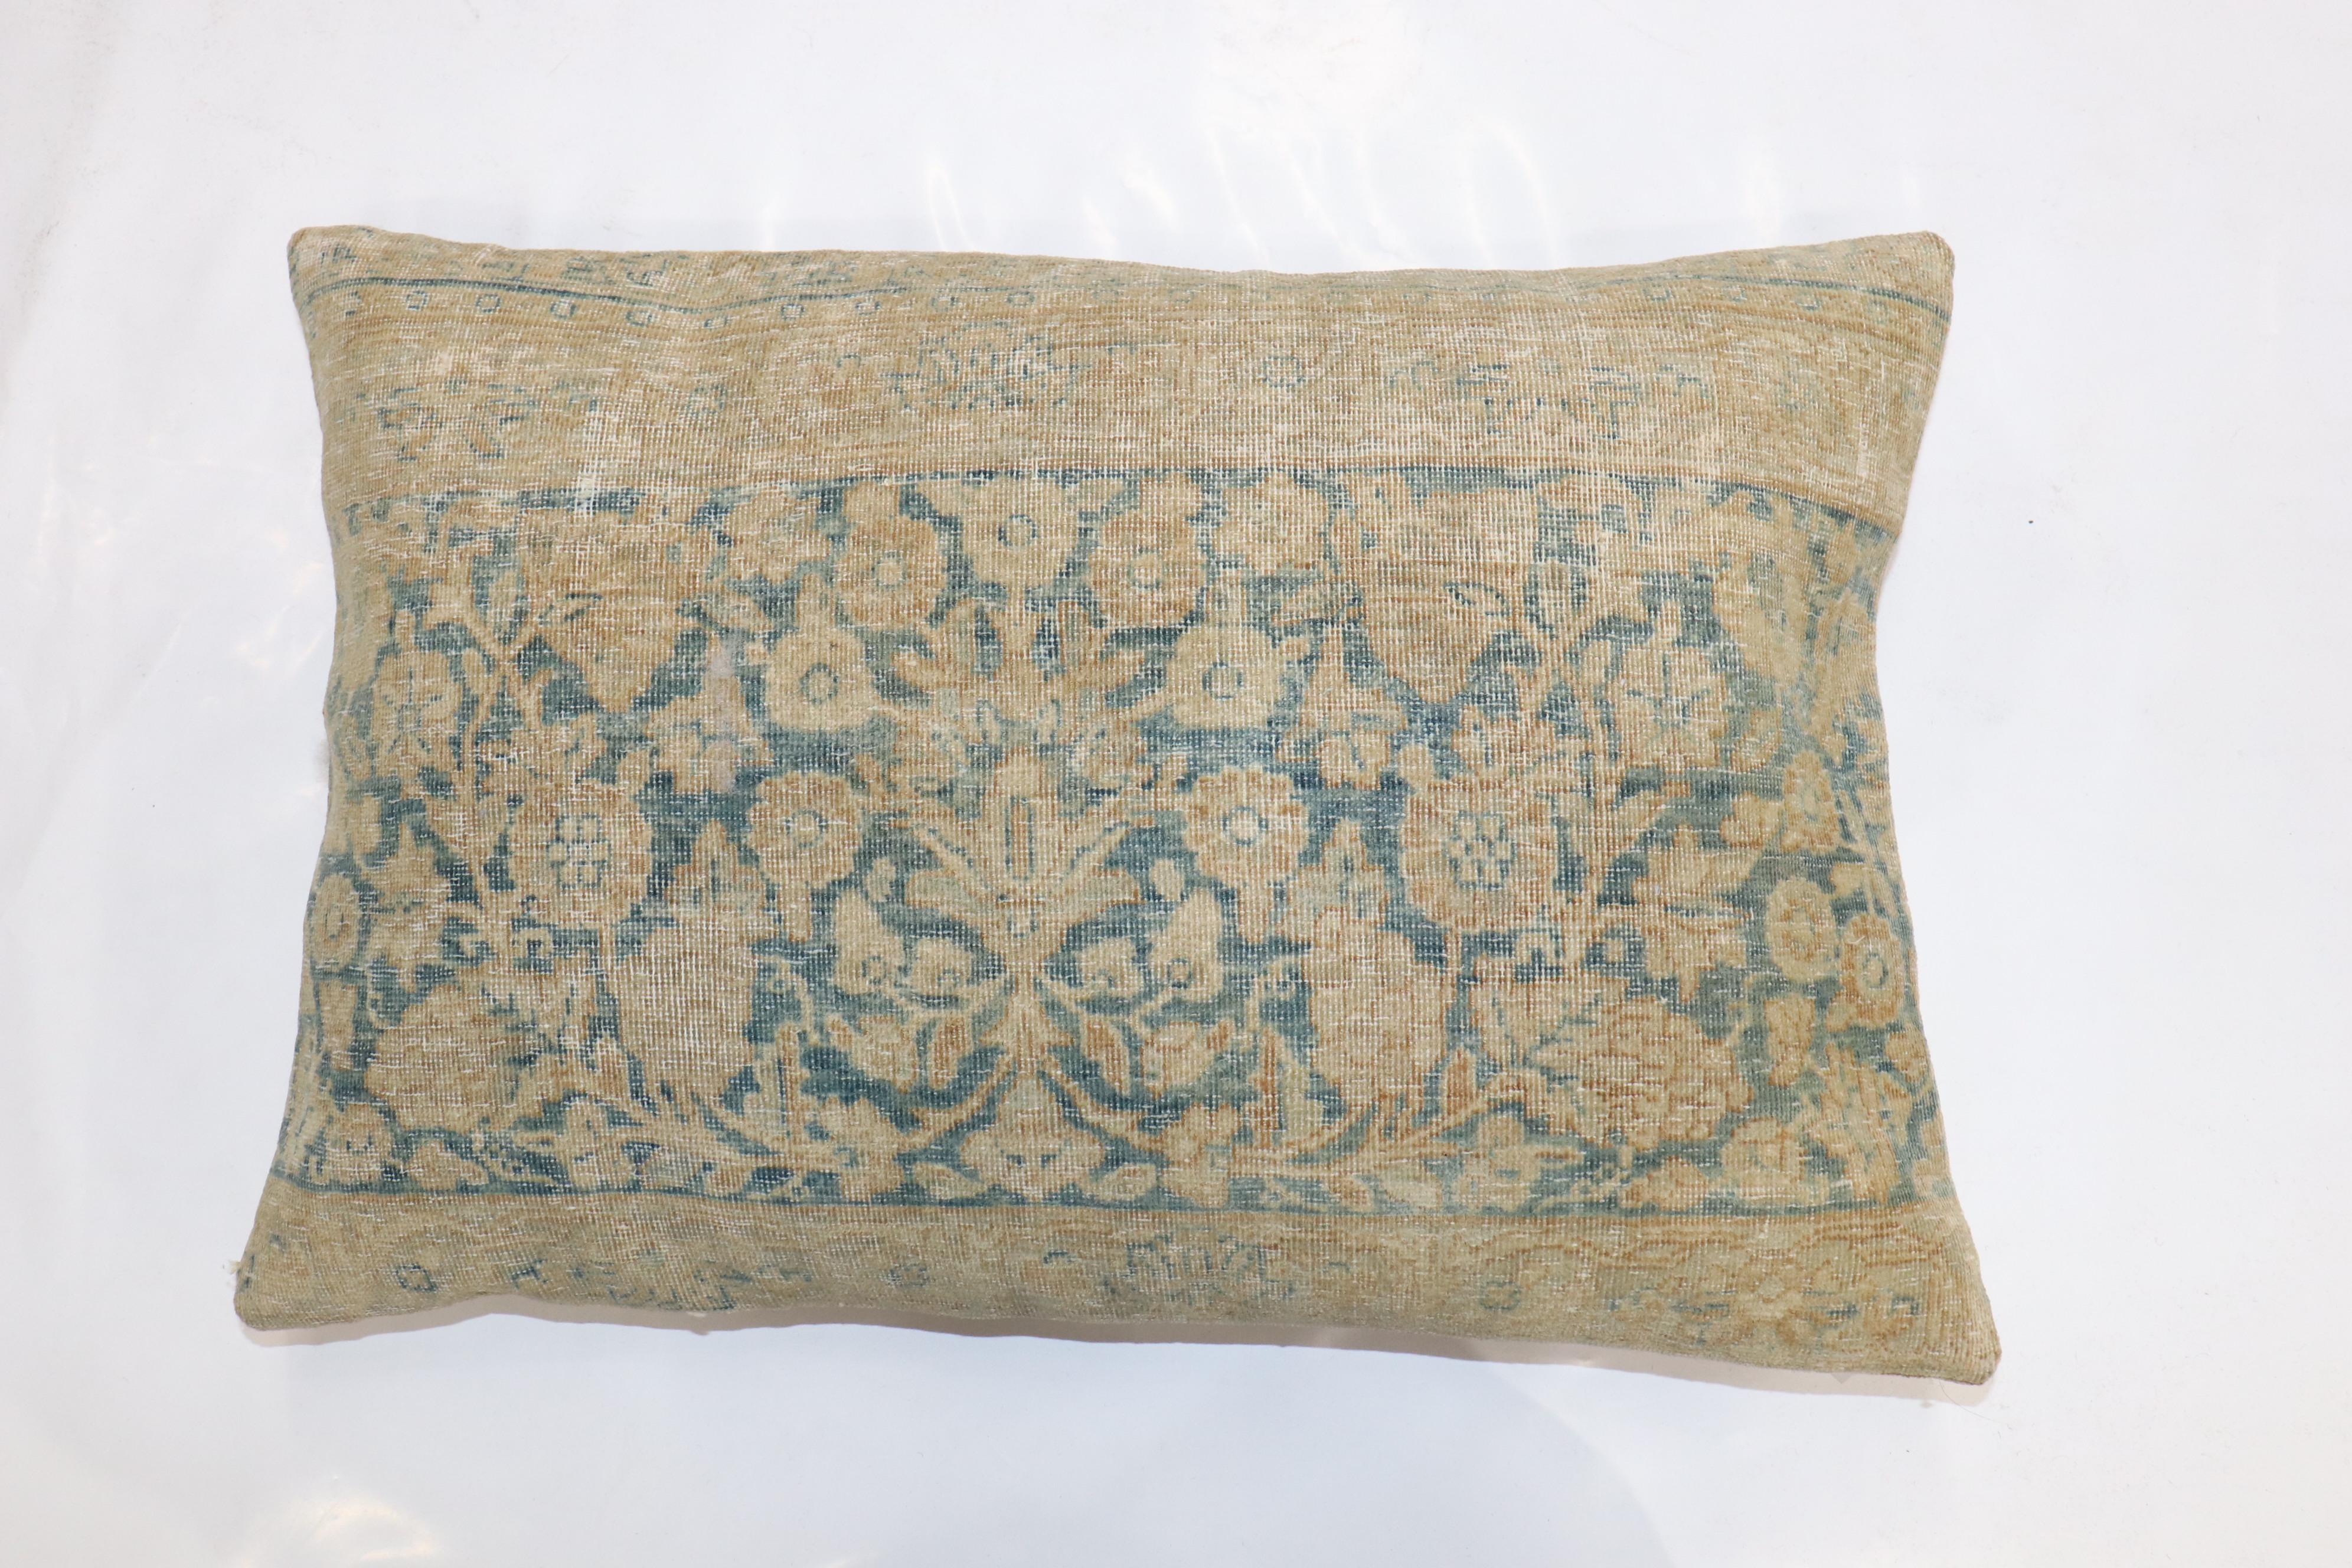 Oreiller réalisé à partir d'un tapis persan Kerman du XIXe siècle. Insert de remplissage et fermeture à glissière fournis

Mesures : 16